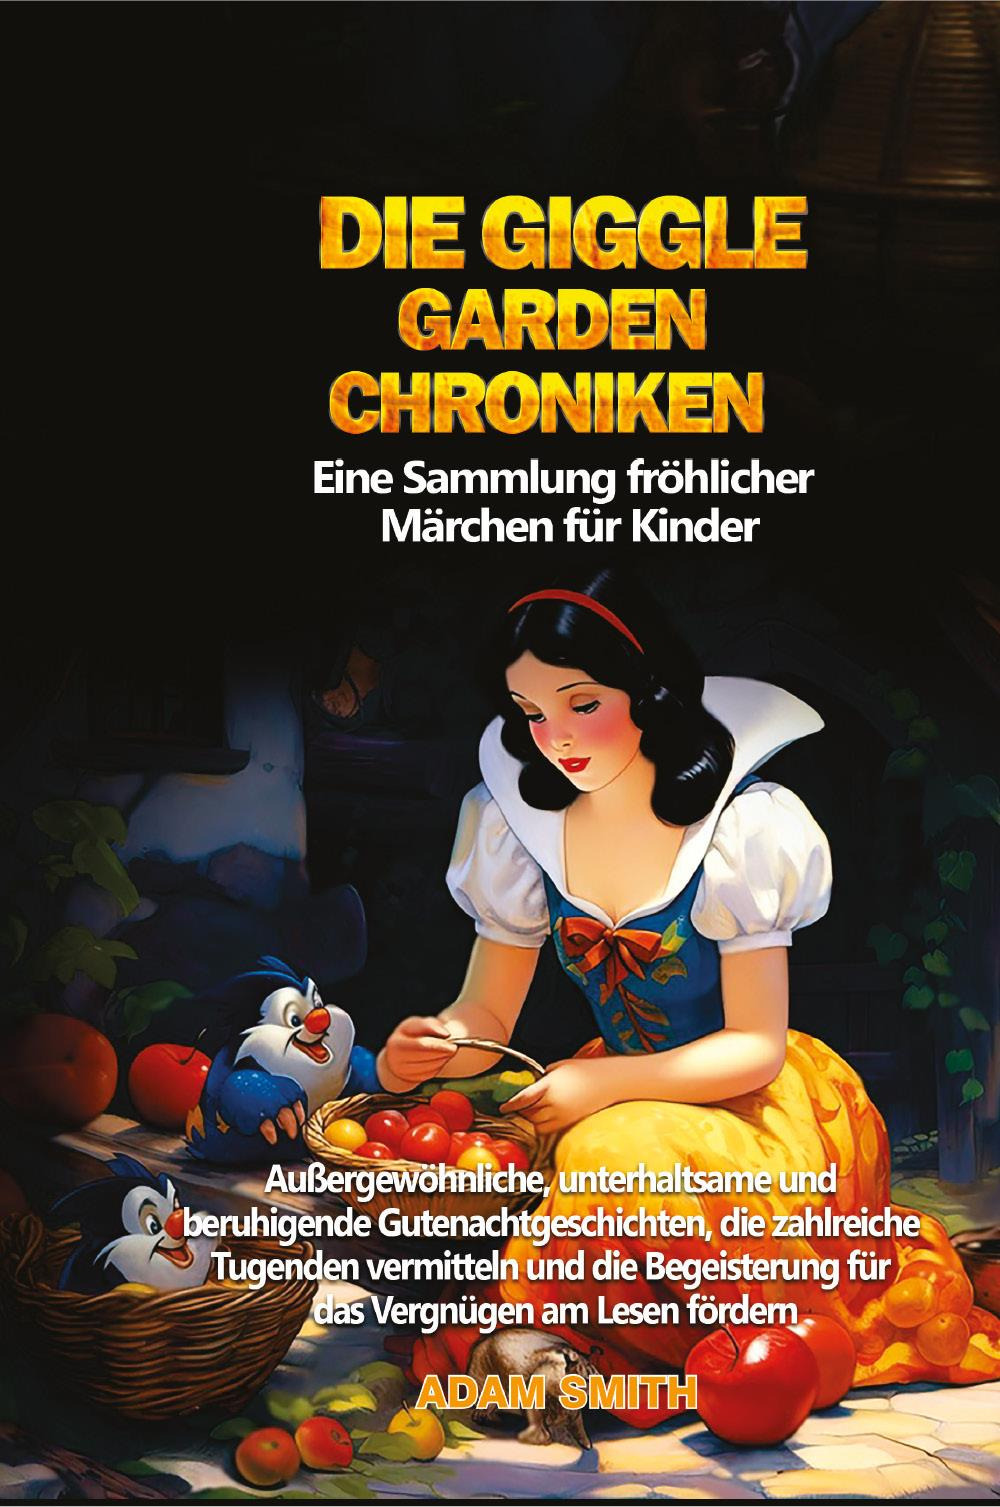 Die giggle garden-chroniken. Eine Sammlung fröhlicher Märchen für Kinder